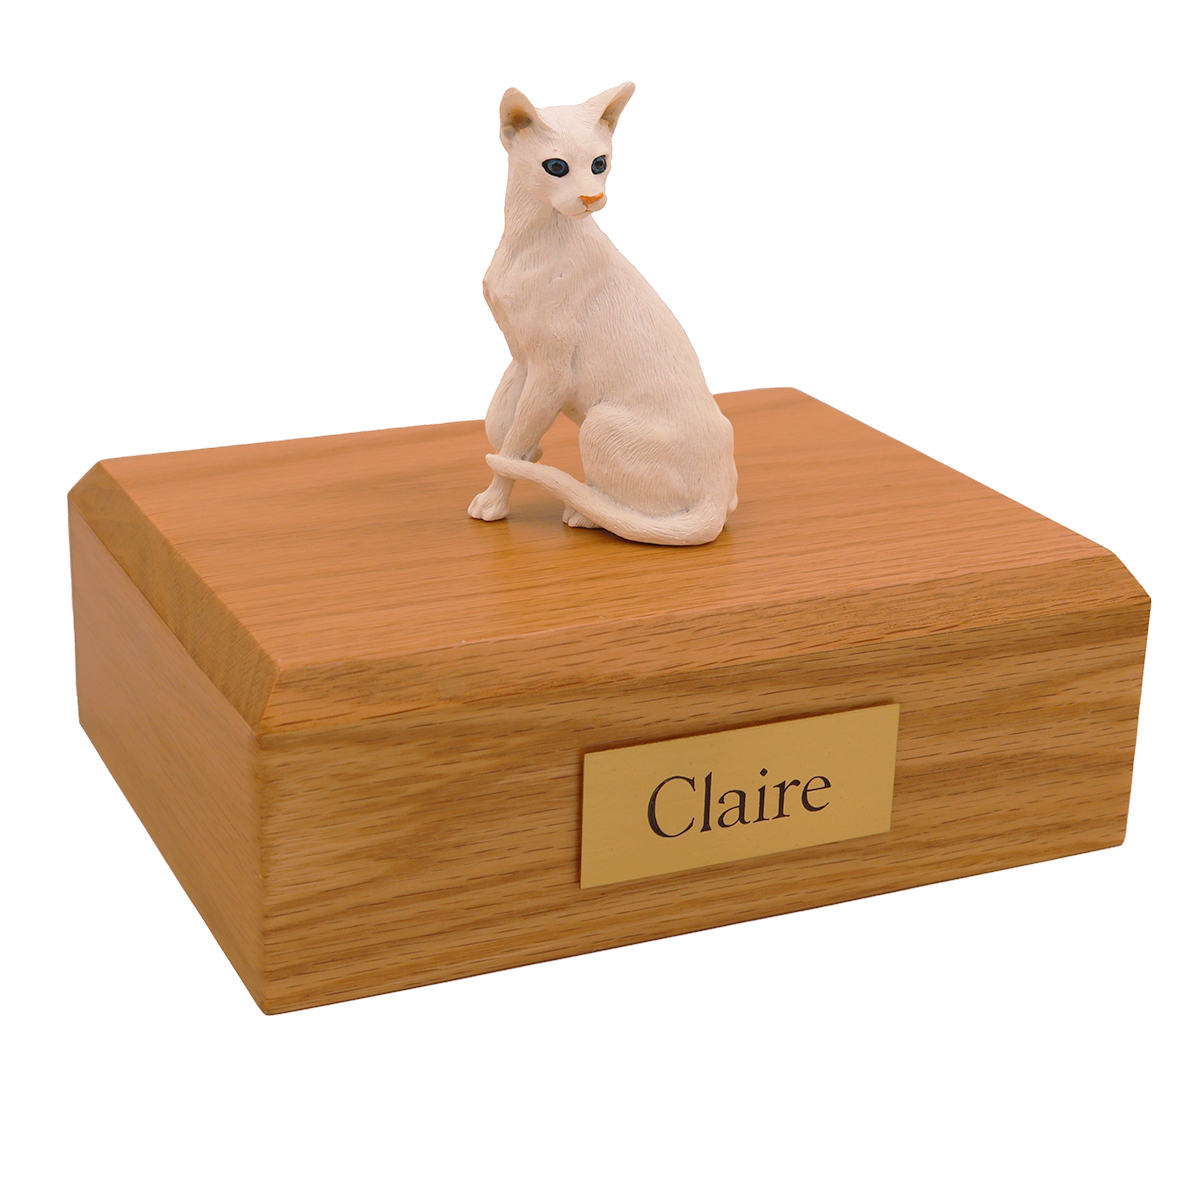 Cat, Oriental Shorthair, White - Figurine Urn